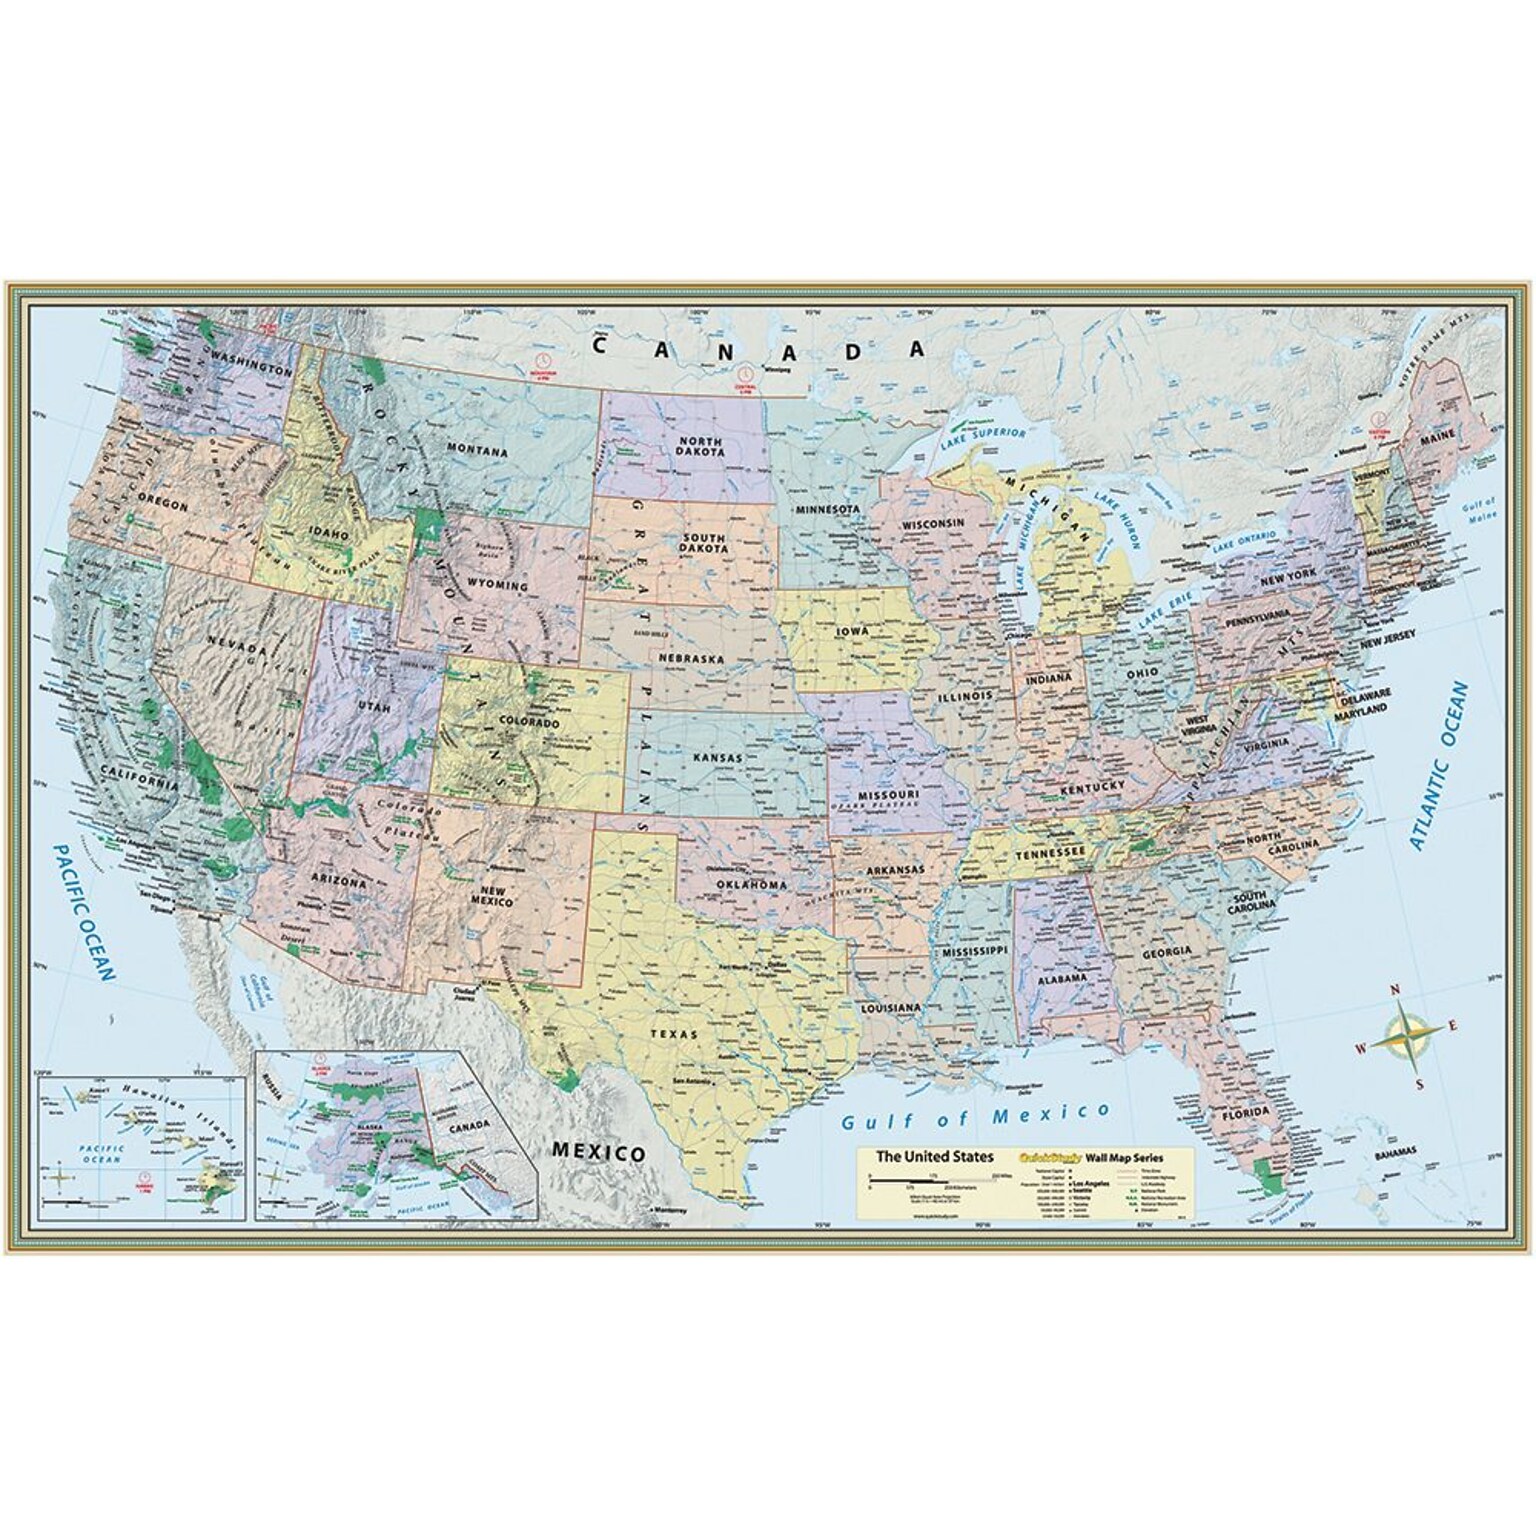 QuickStudy World/US Maps, 50 x 32, 2/Pack (9781423230700)